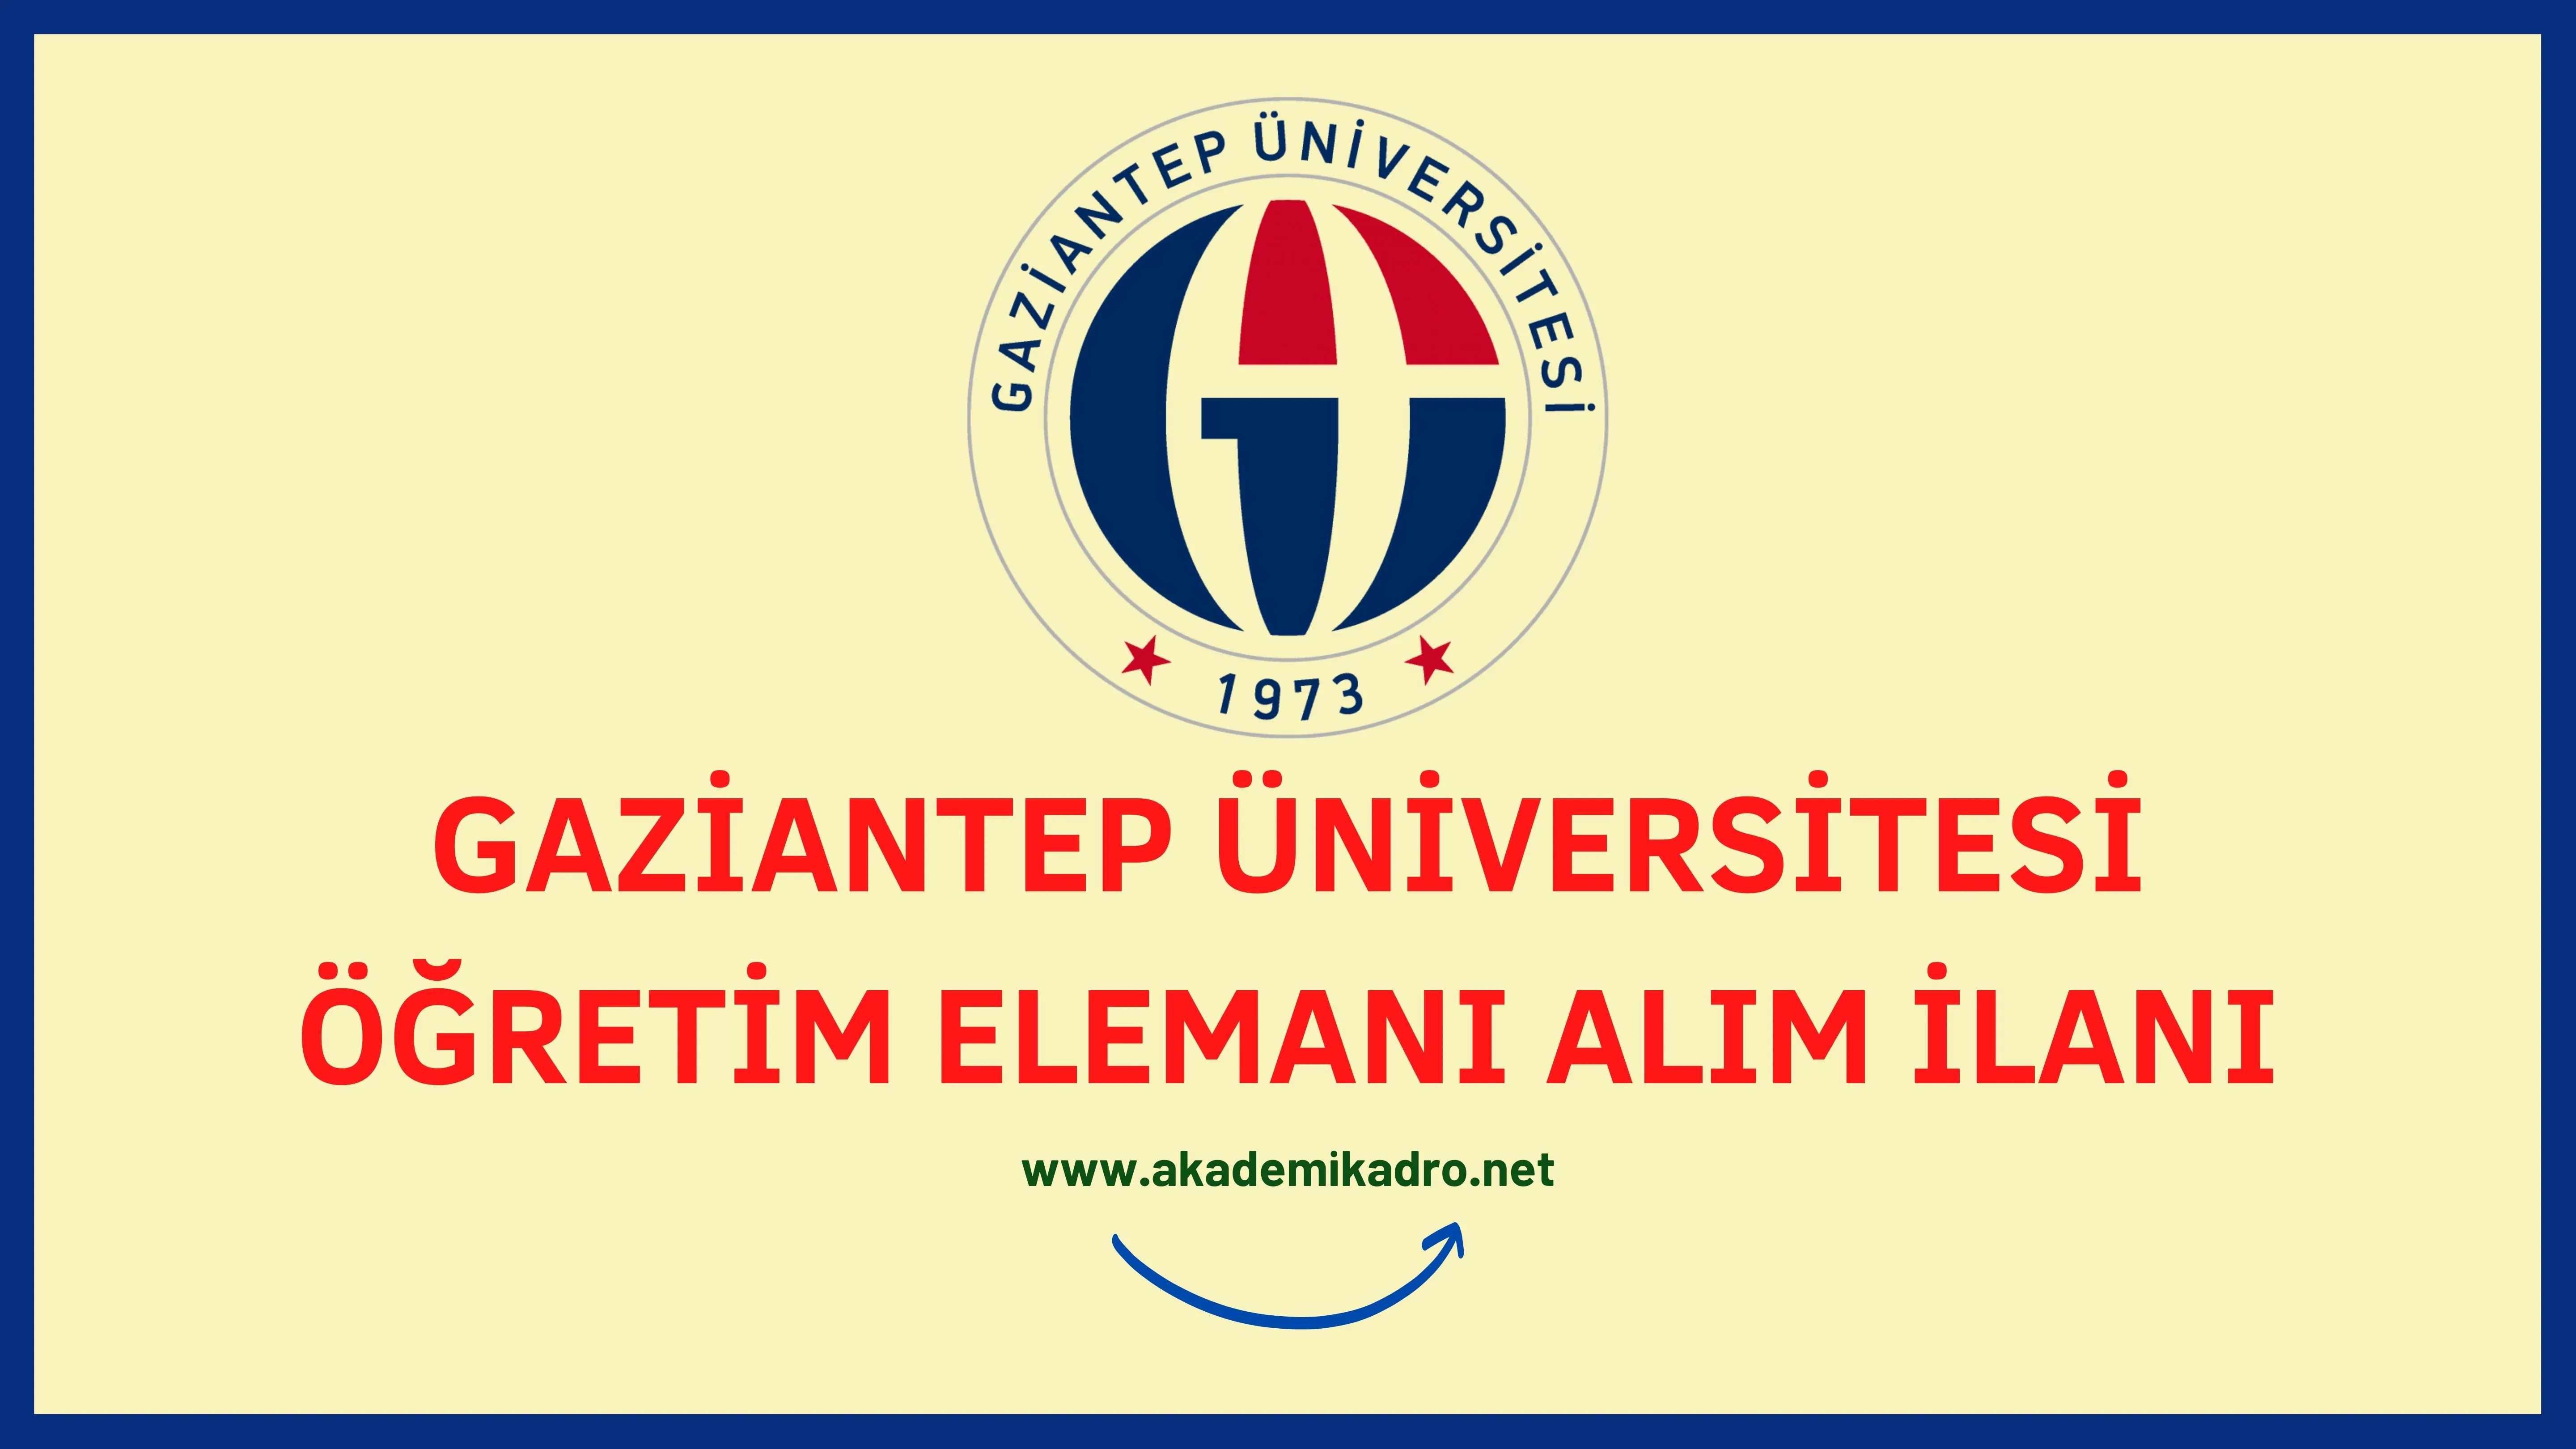 Gaziantep Üniversitesi 17 Araştırma görevlisi, 6 Öğretim görevlisi ve 6 öğretim üyesi alacaktır. Son başvuru tarihi 22 Aralık 2023